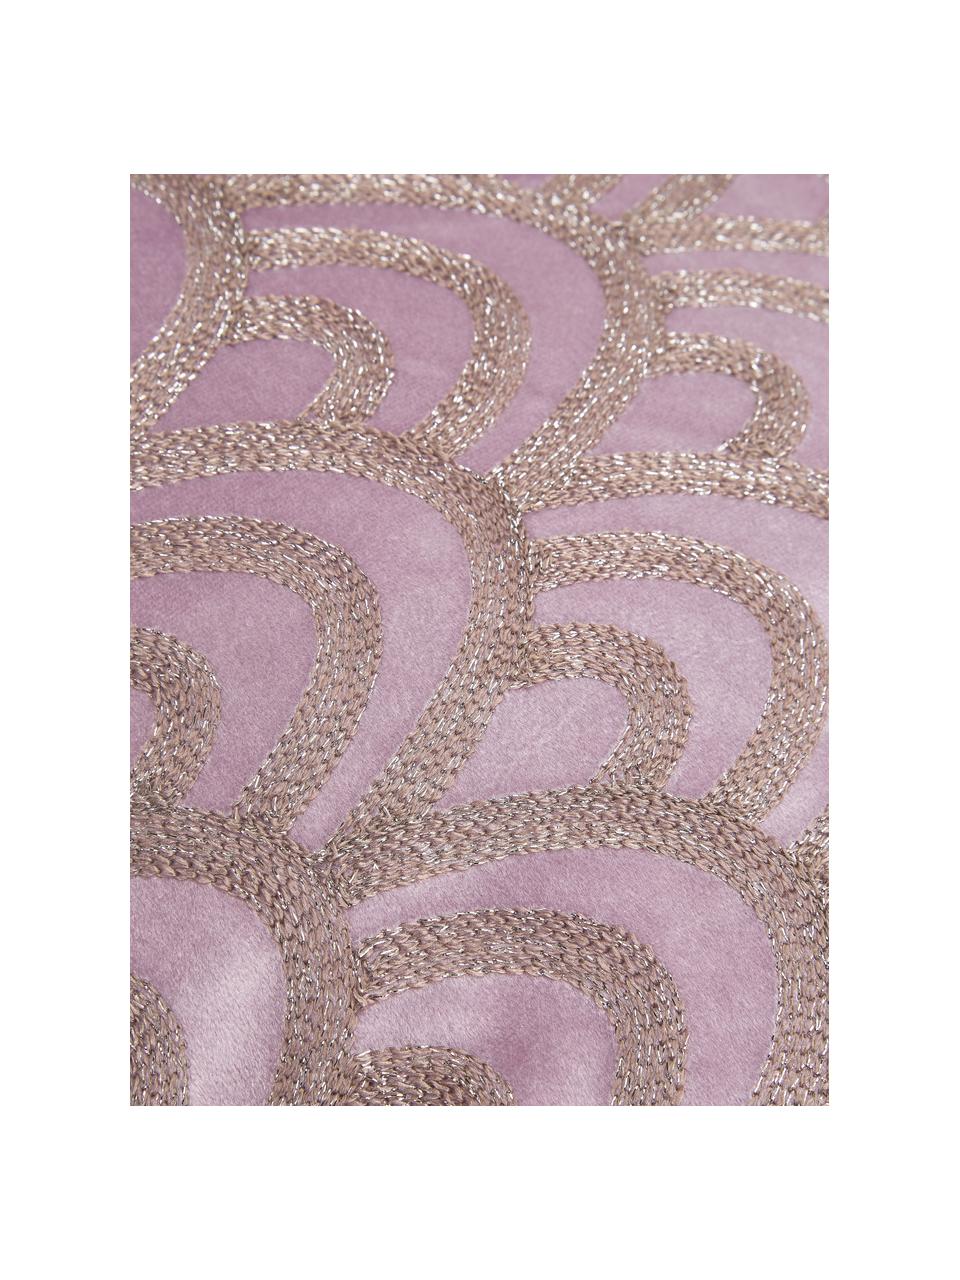 Samt-Kissen Trole mit glänzender Stickerei, mit Inlett, 100% Samt (Polyester), Pink, Silberfarben, 40 x 60 cm